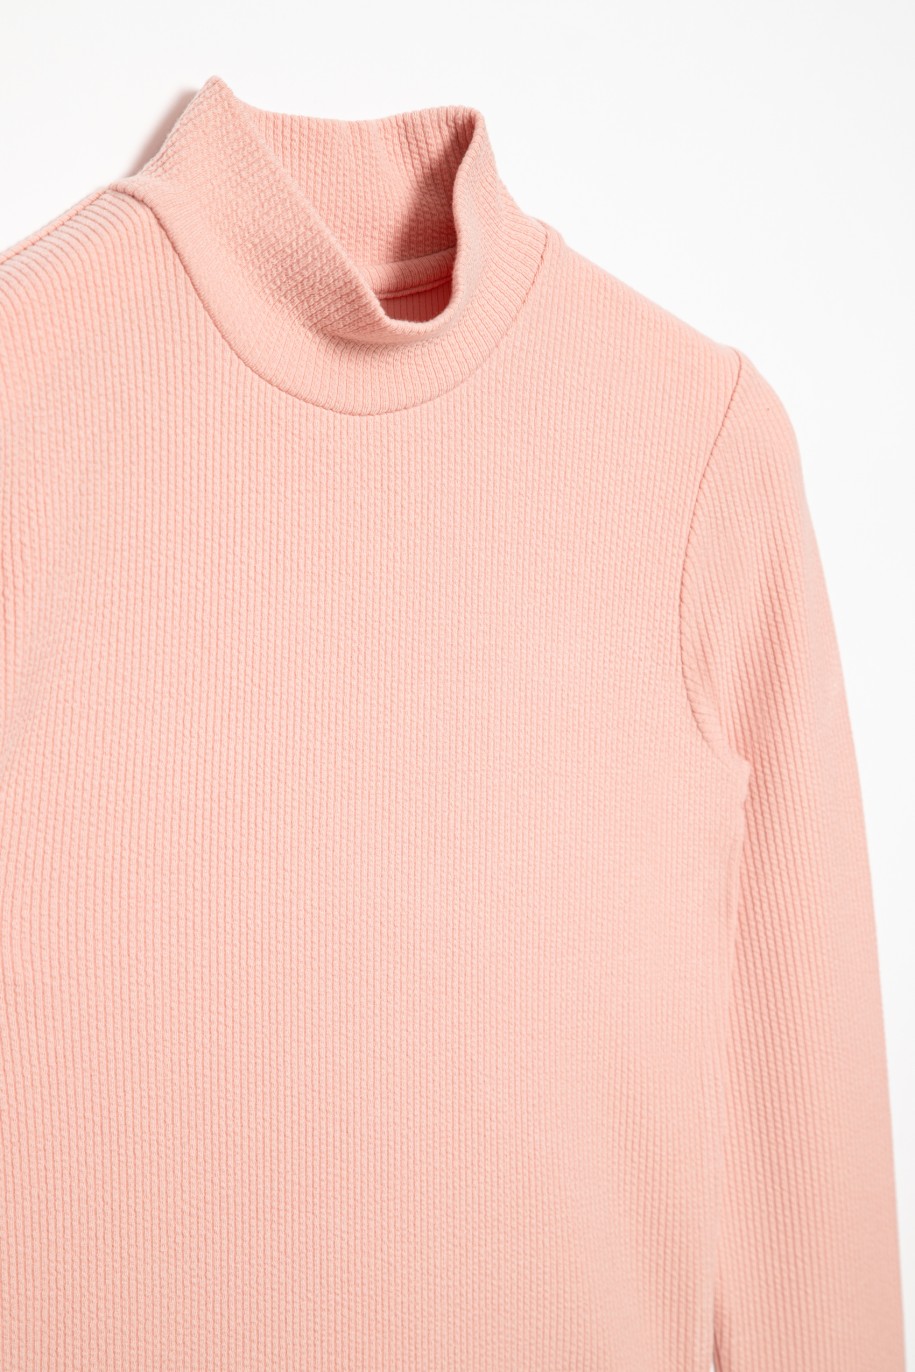 Różowa bluzka dla dziewczyny - 31691